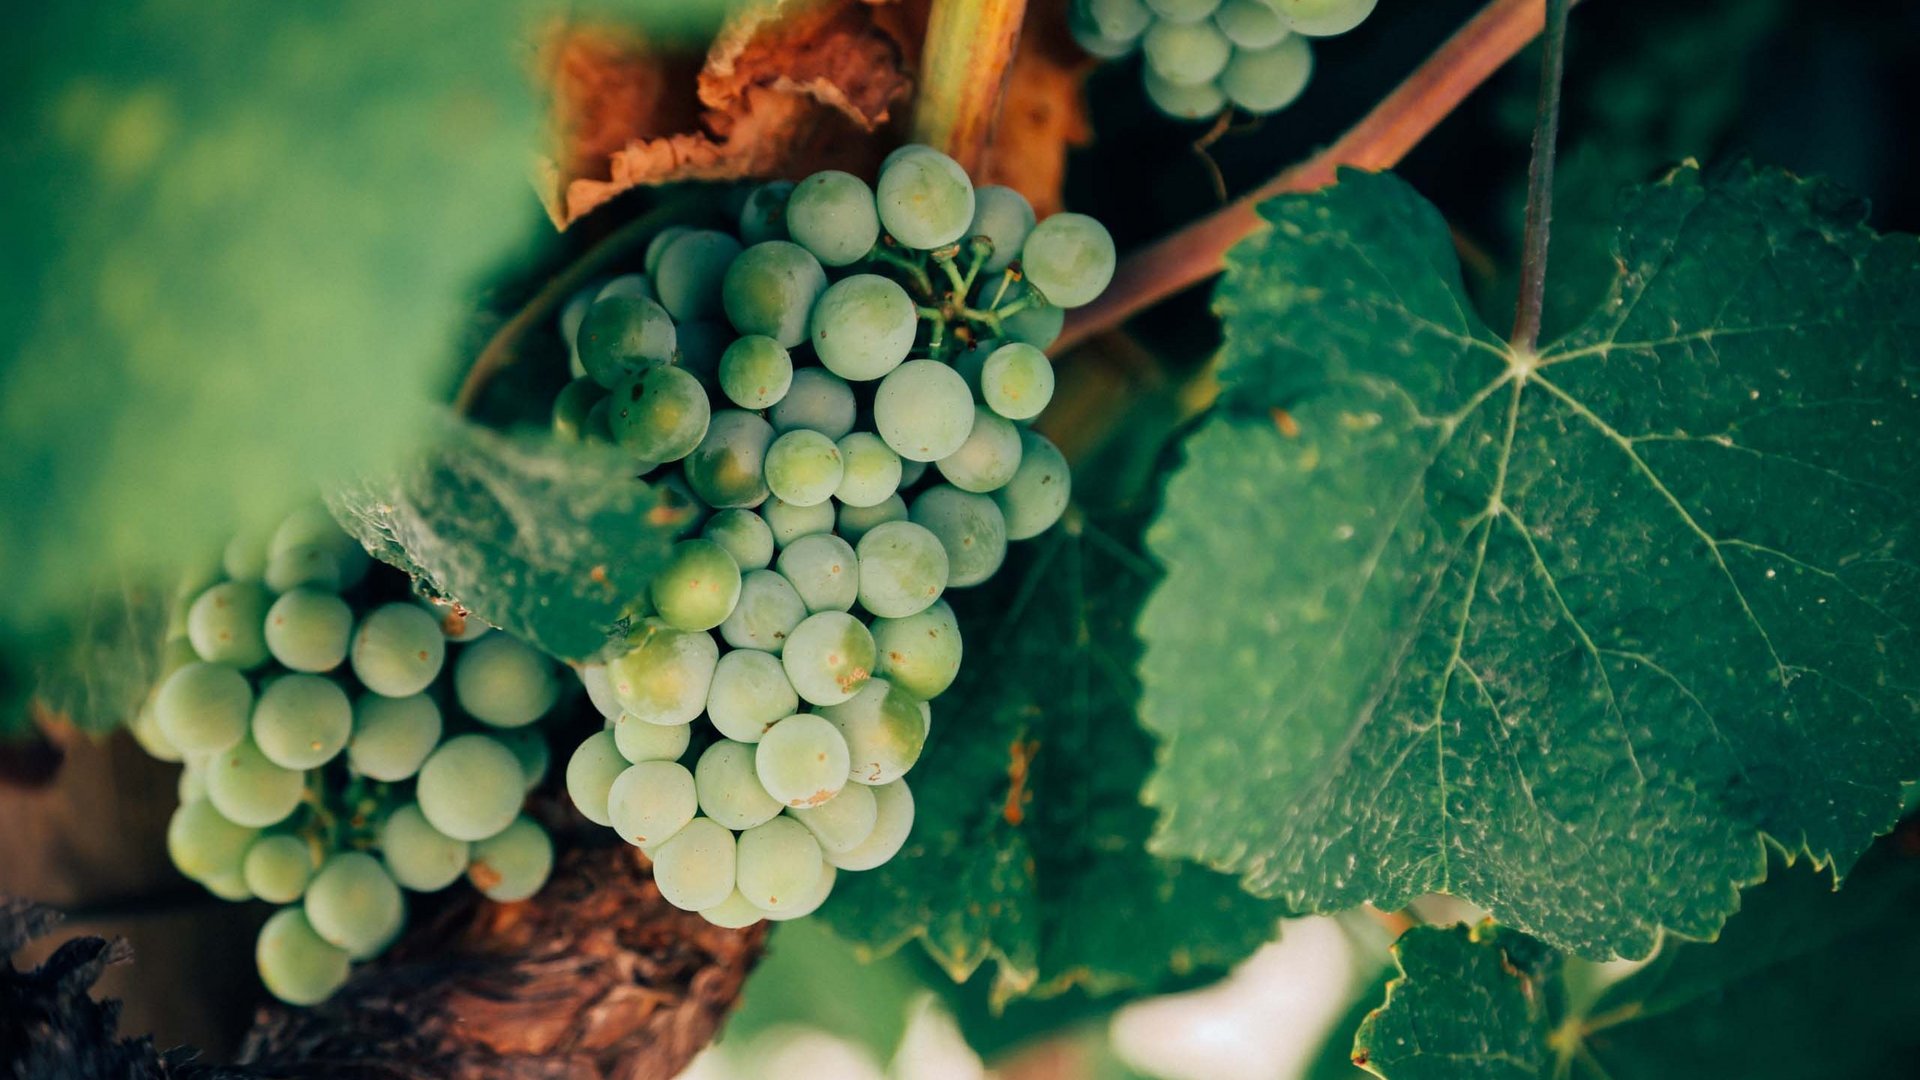 Dazulernen: Neuigkeiten aus unserem Weingeschäft und Weingut